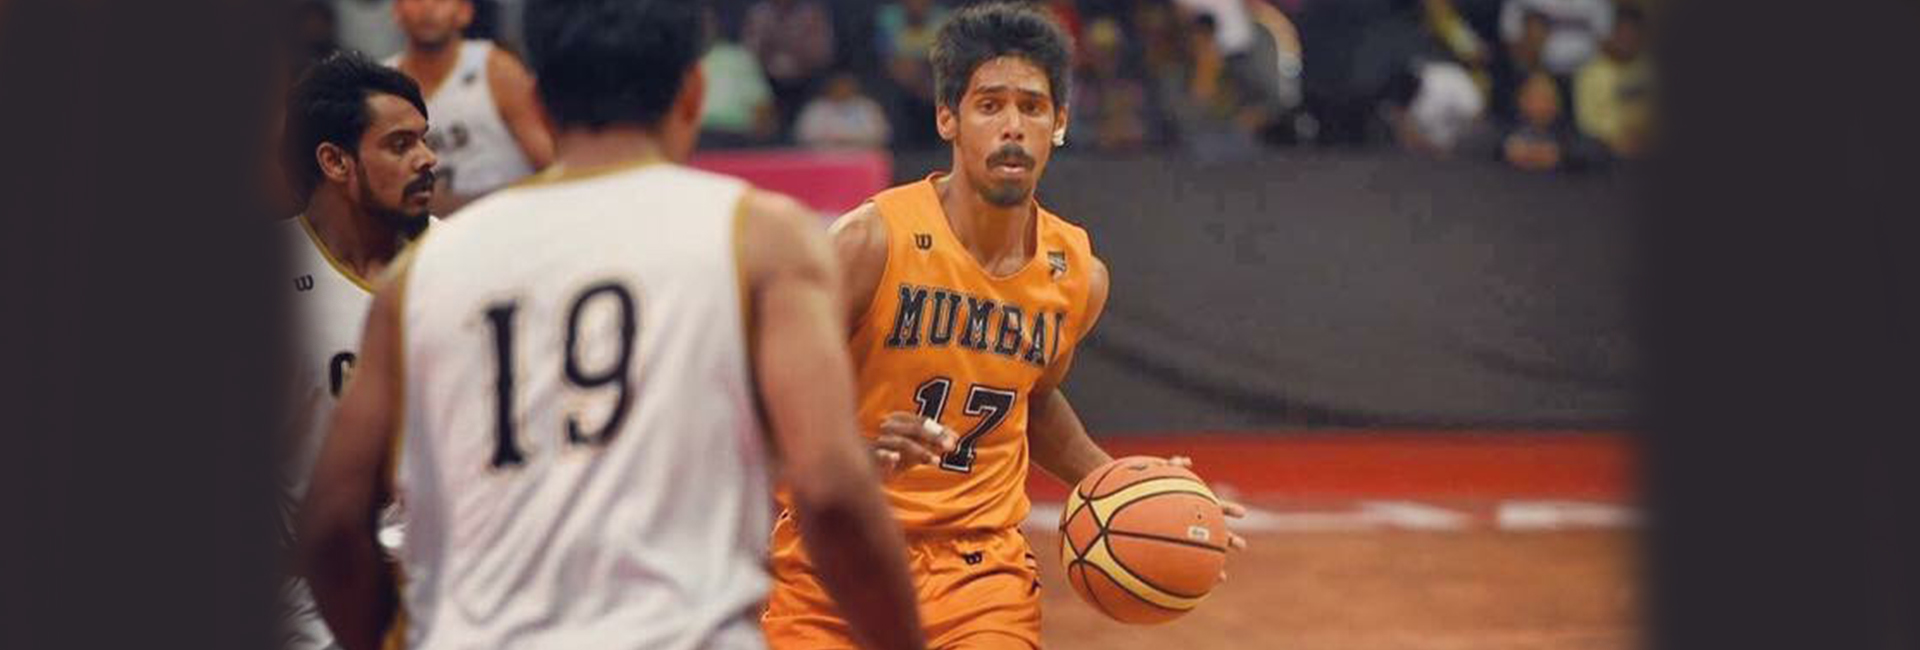 Slam dunk: Índia, Espanha ou EUA, basquete profissional Prudhvi Reddy 'atira' para emocionar em todos os lugares